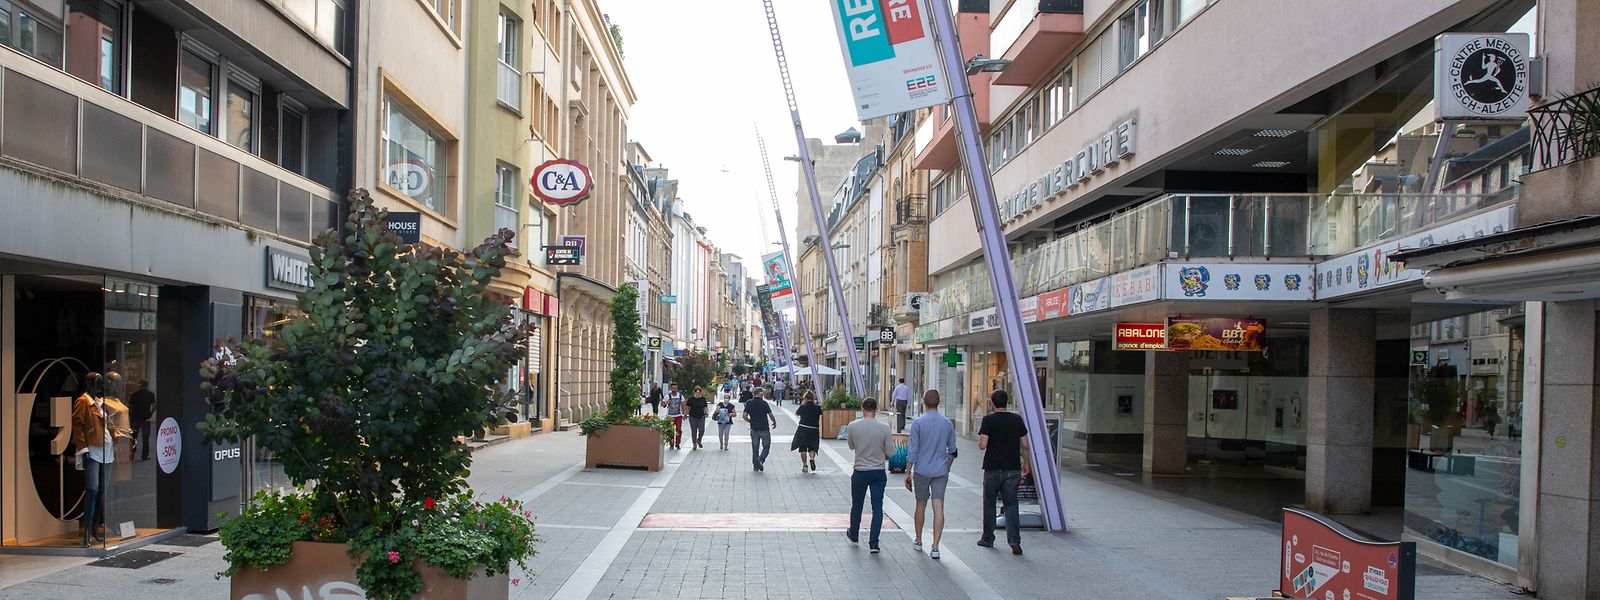 In Esch befindet sich die längste Fußgängerzone des Landes. 